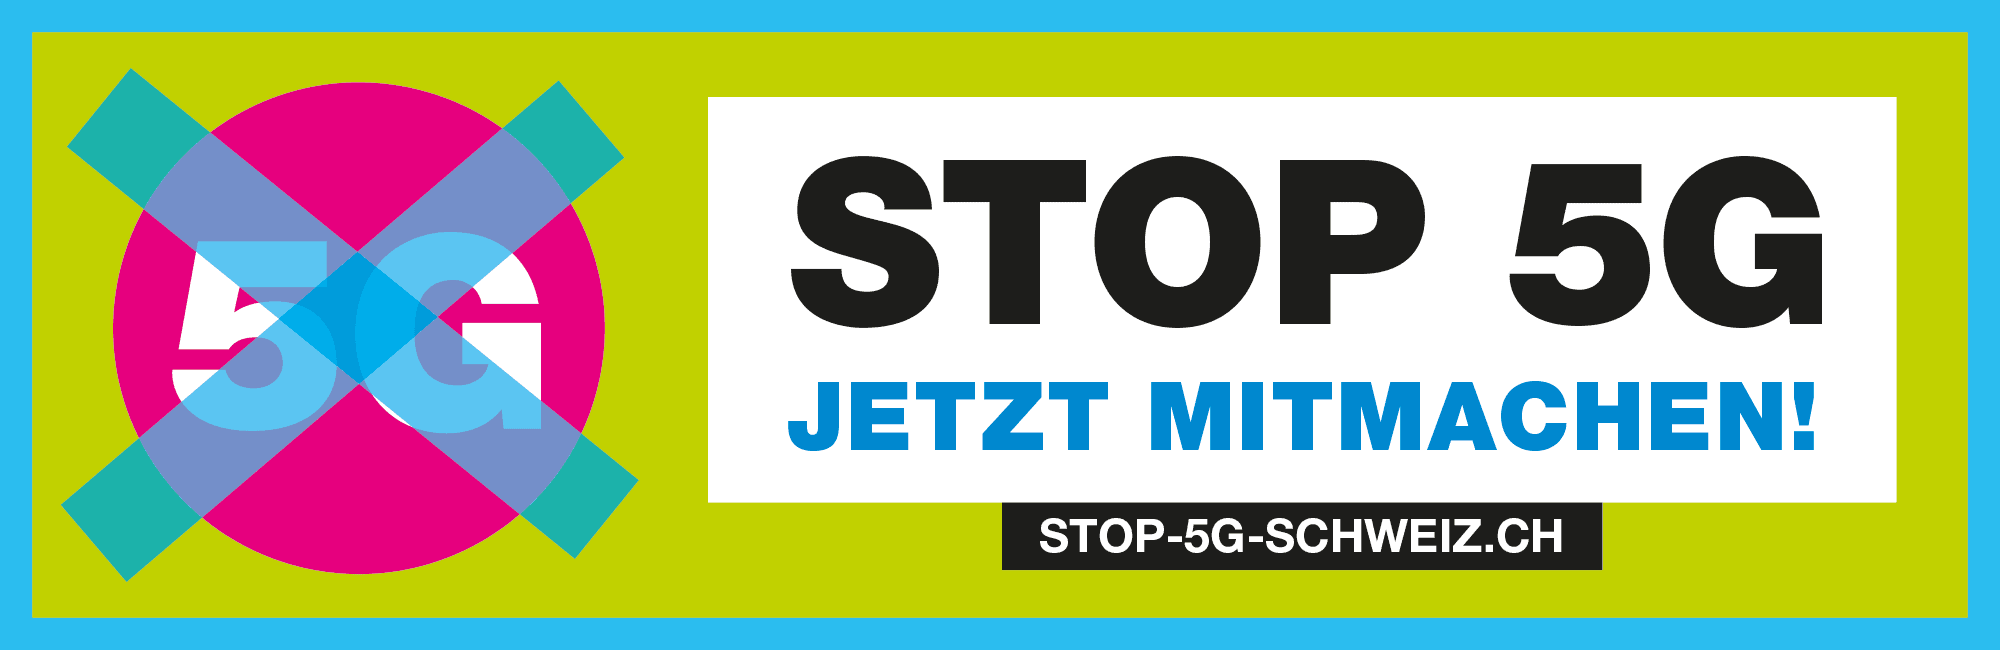 Stop 5G Schweiz – Jetzt mitmachen!